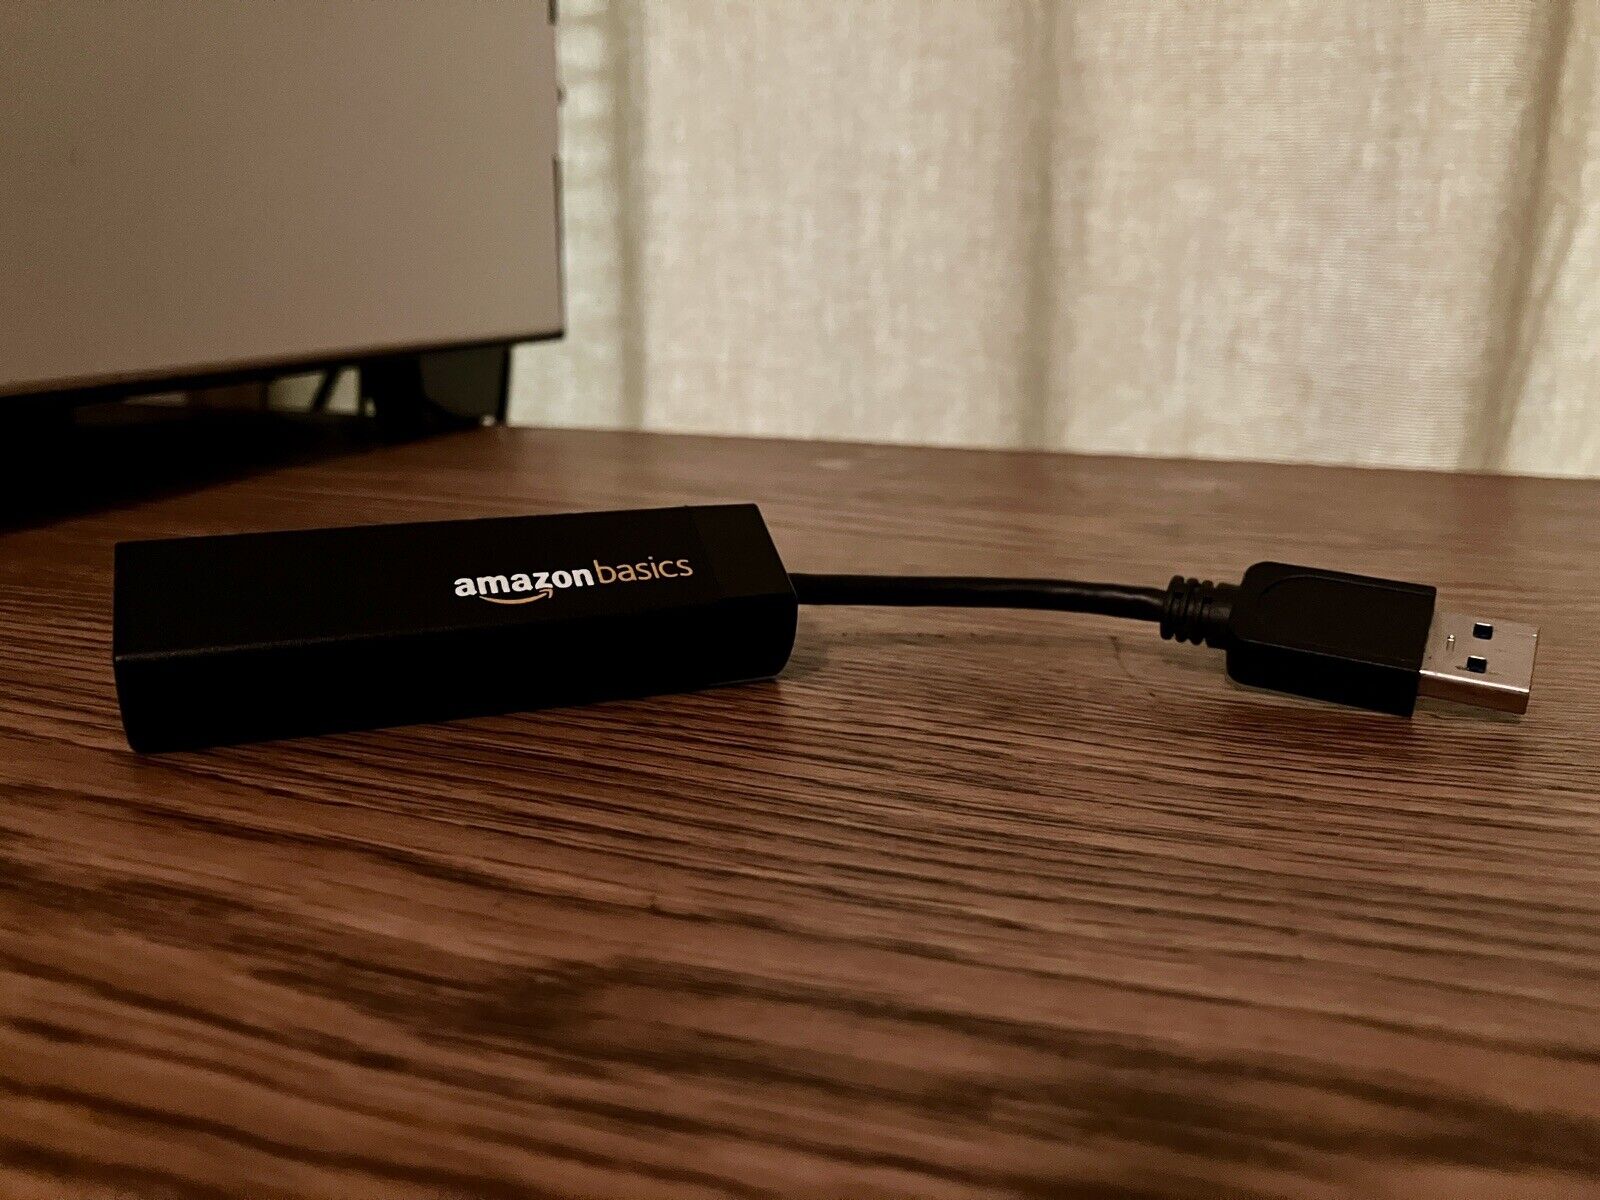 AmazonBasics USB 3.0 to 10/100/1000 Gigabit Ethernet Adapter